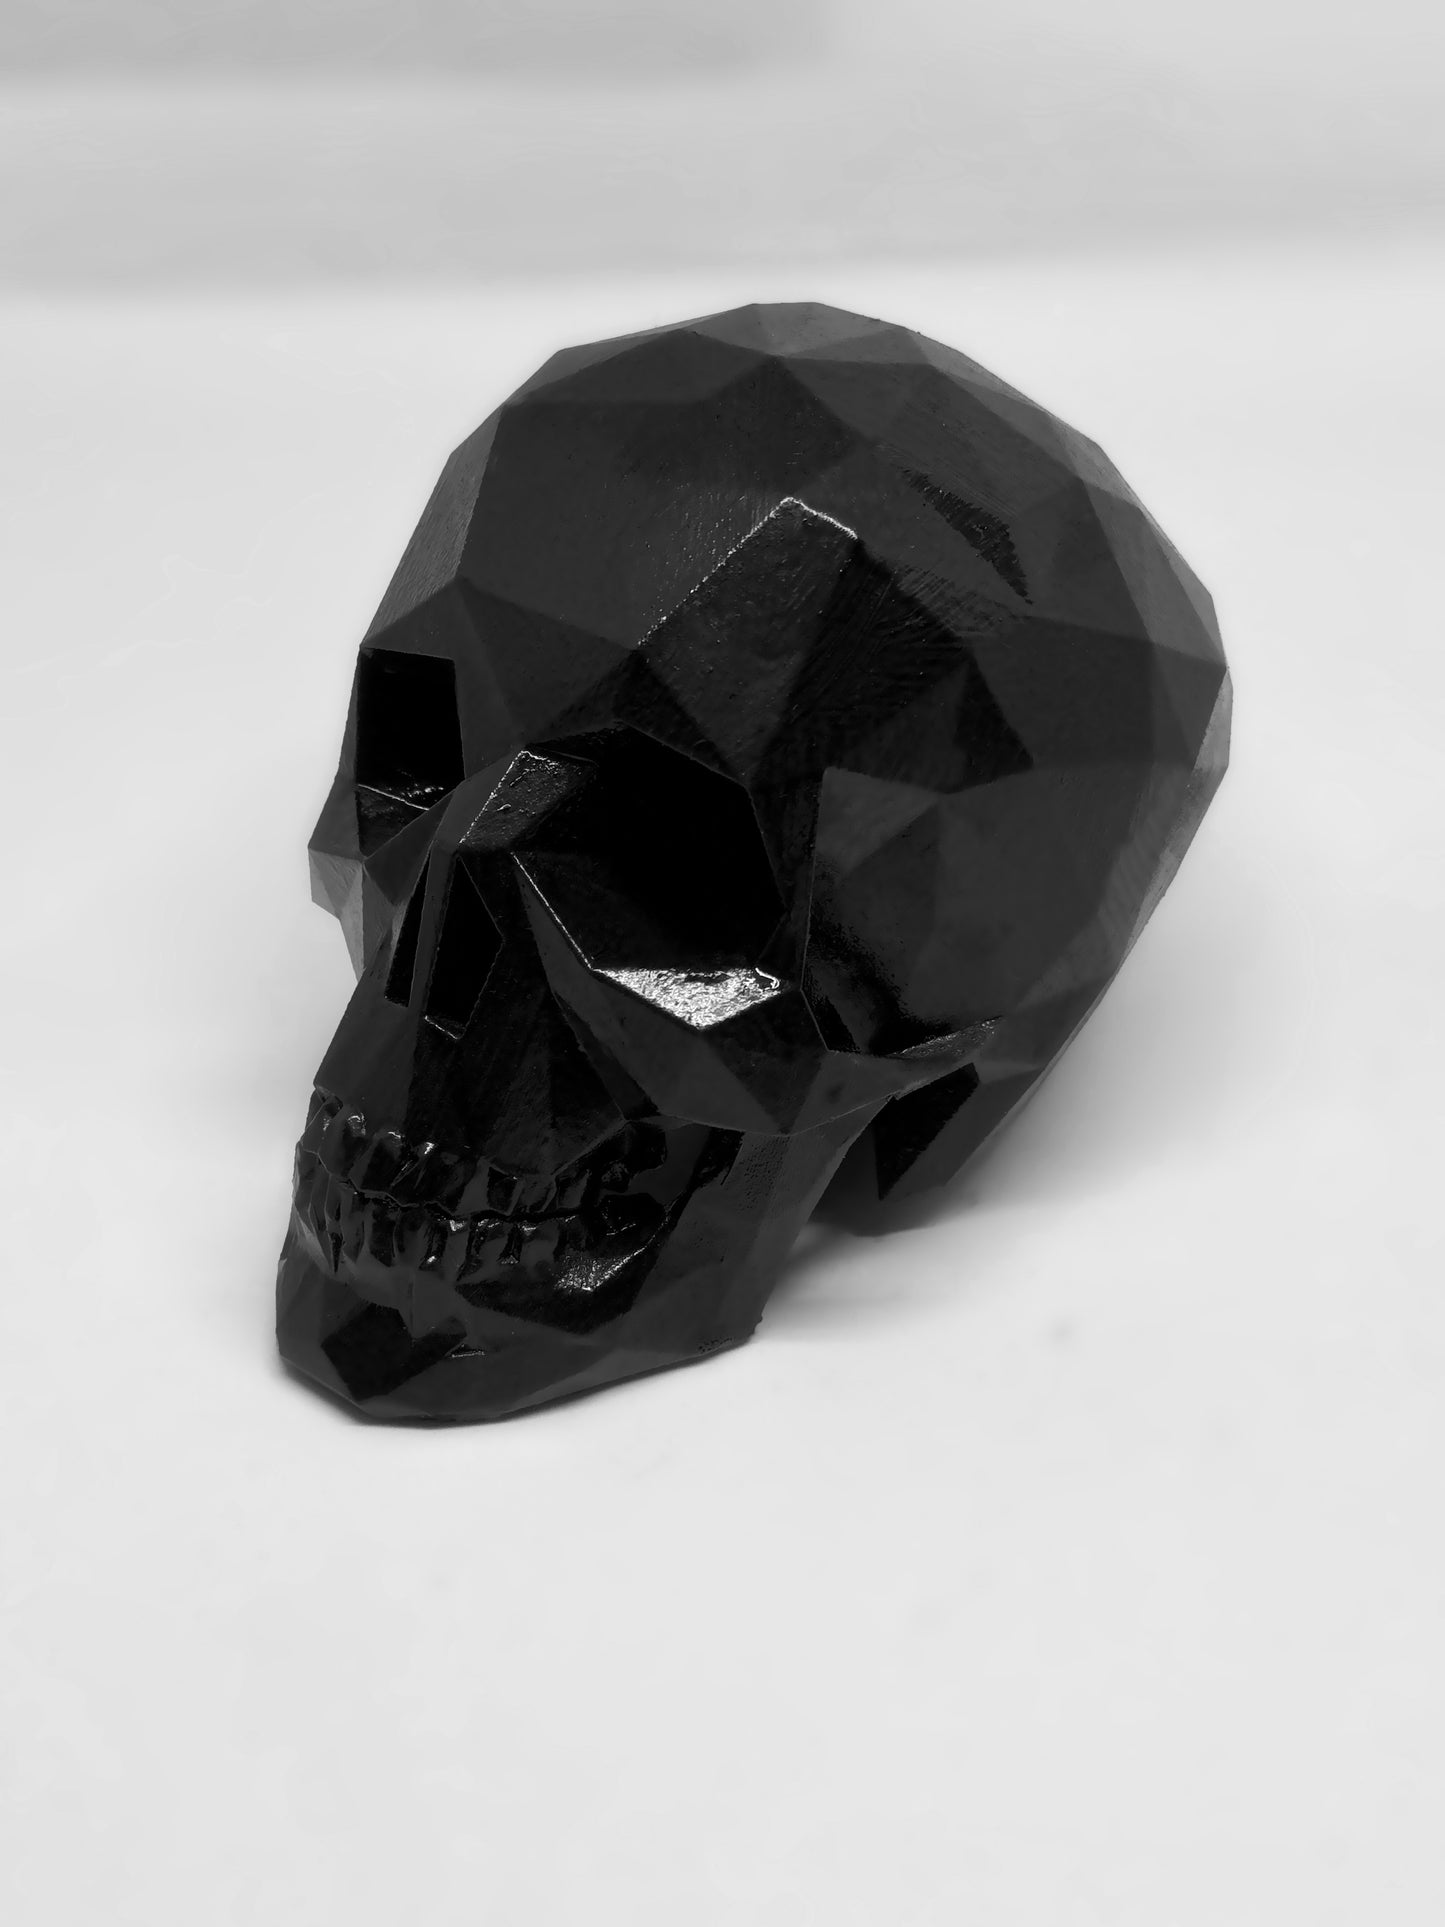 IVORY BLACK AFTERLIFE SKULL - 3D PRINTED SCULPTURE (1/13)